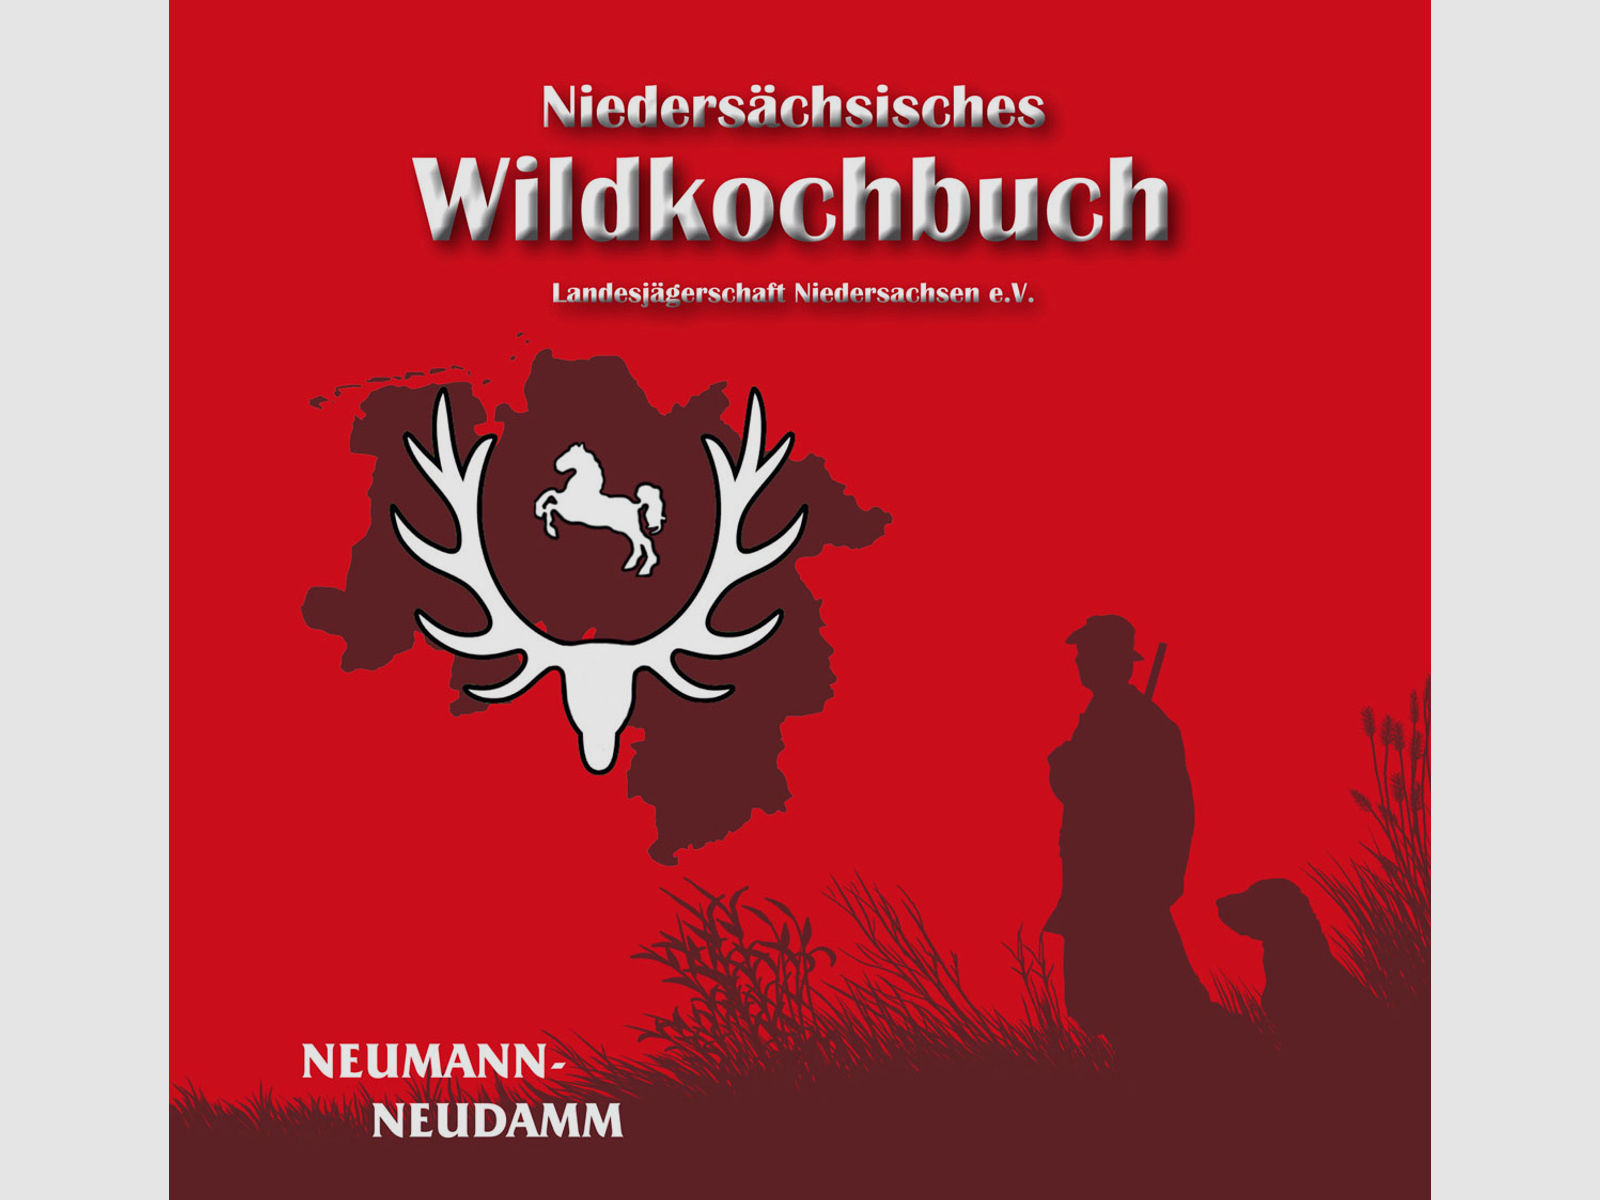 Wildkochbuch Niedersachsen